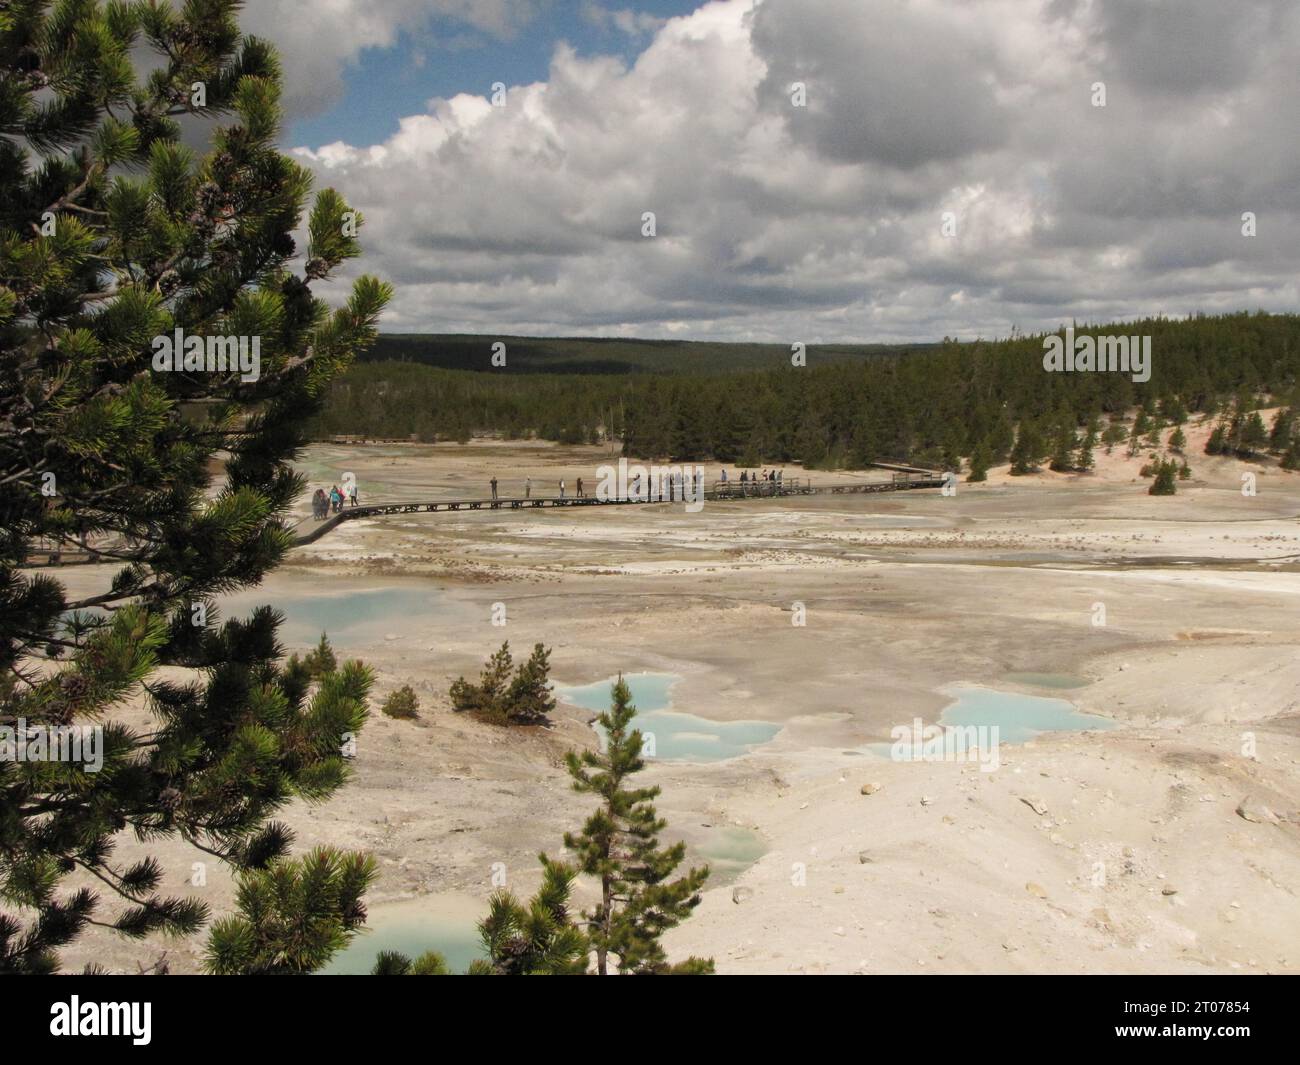 Herrlicher Blick auf das große Geysirbecken im Yellowstone-Nationalpark. Lange Stege für Sicherheit, Dampfaufgang und die türkisfarbene Farbe des kochenden Wassers. Stockfoto